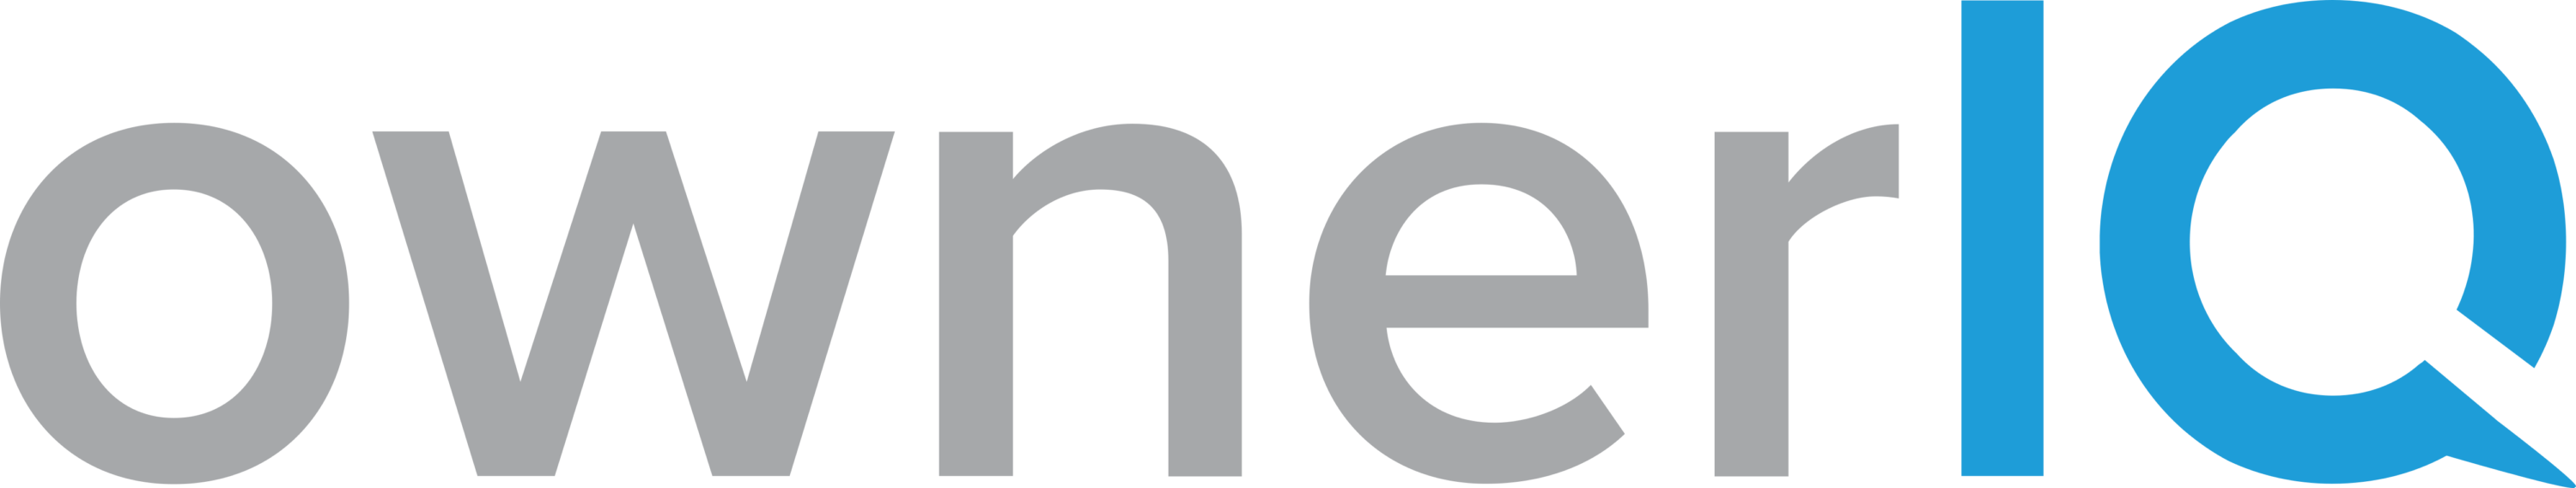 OwnerIQ Logo